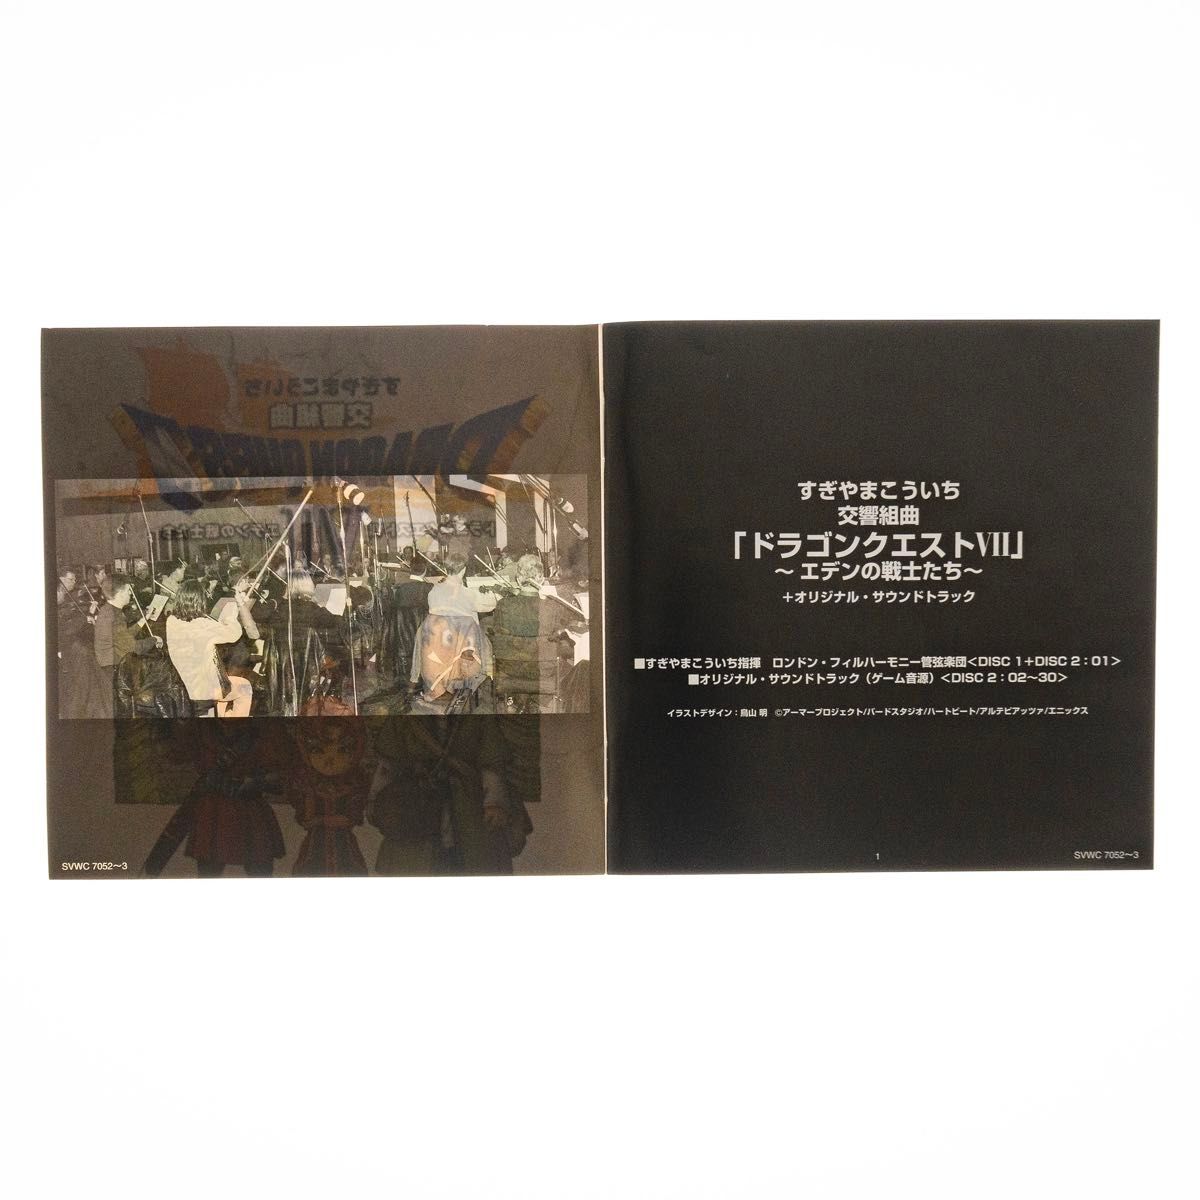 【CD2枚組】交響組曲 ドラゴンクエストVII エデンの戦士たち SVWC-7052〜3 ロンドン・フィルハーモニー管弦楽団